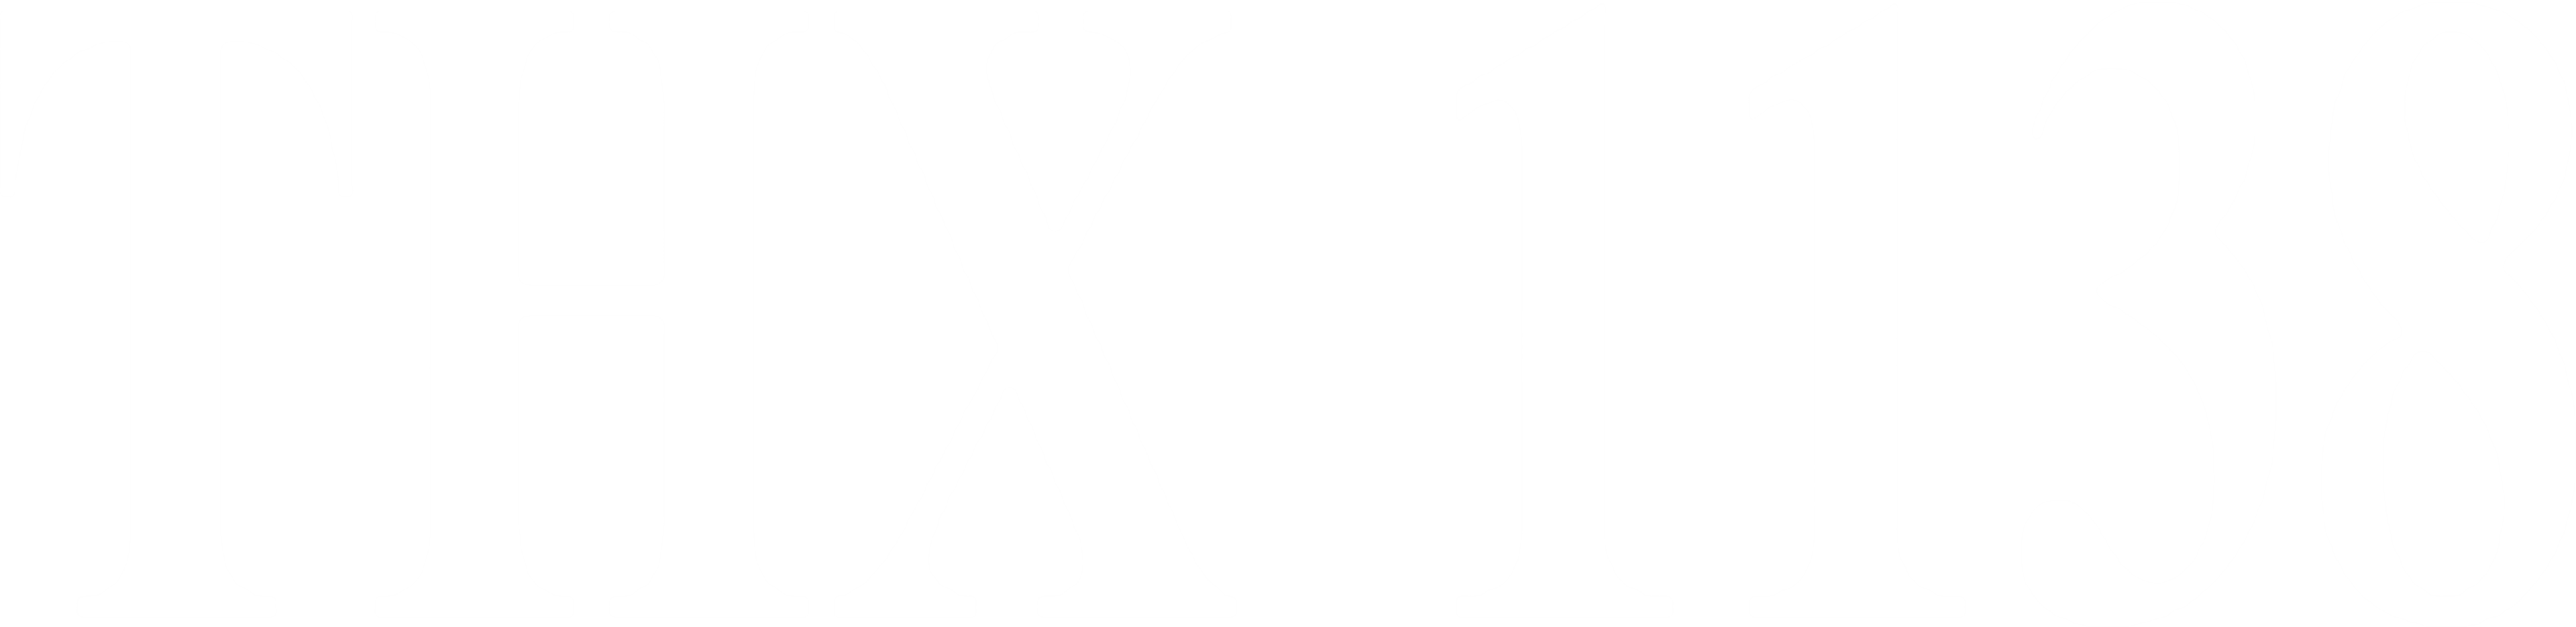 THX 1138 logo